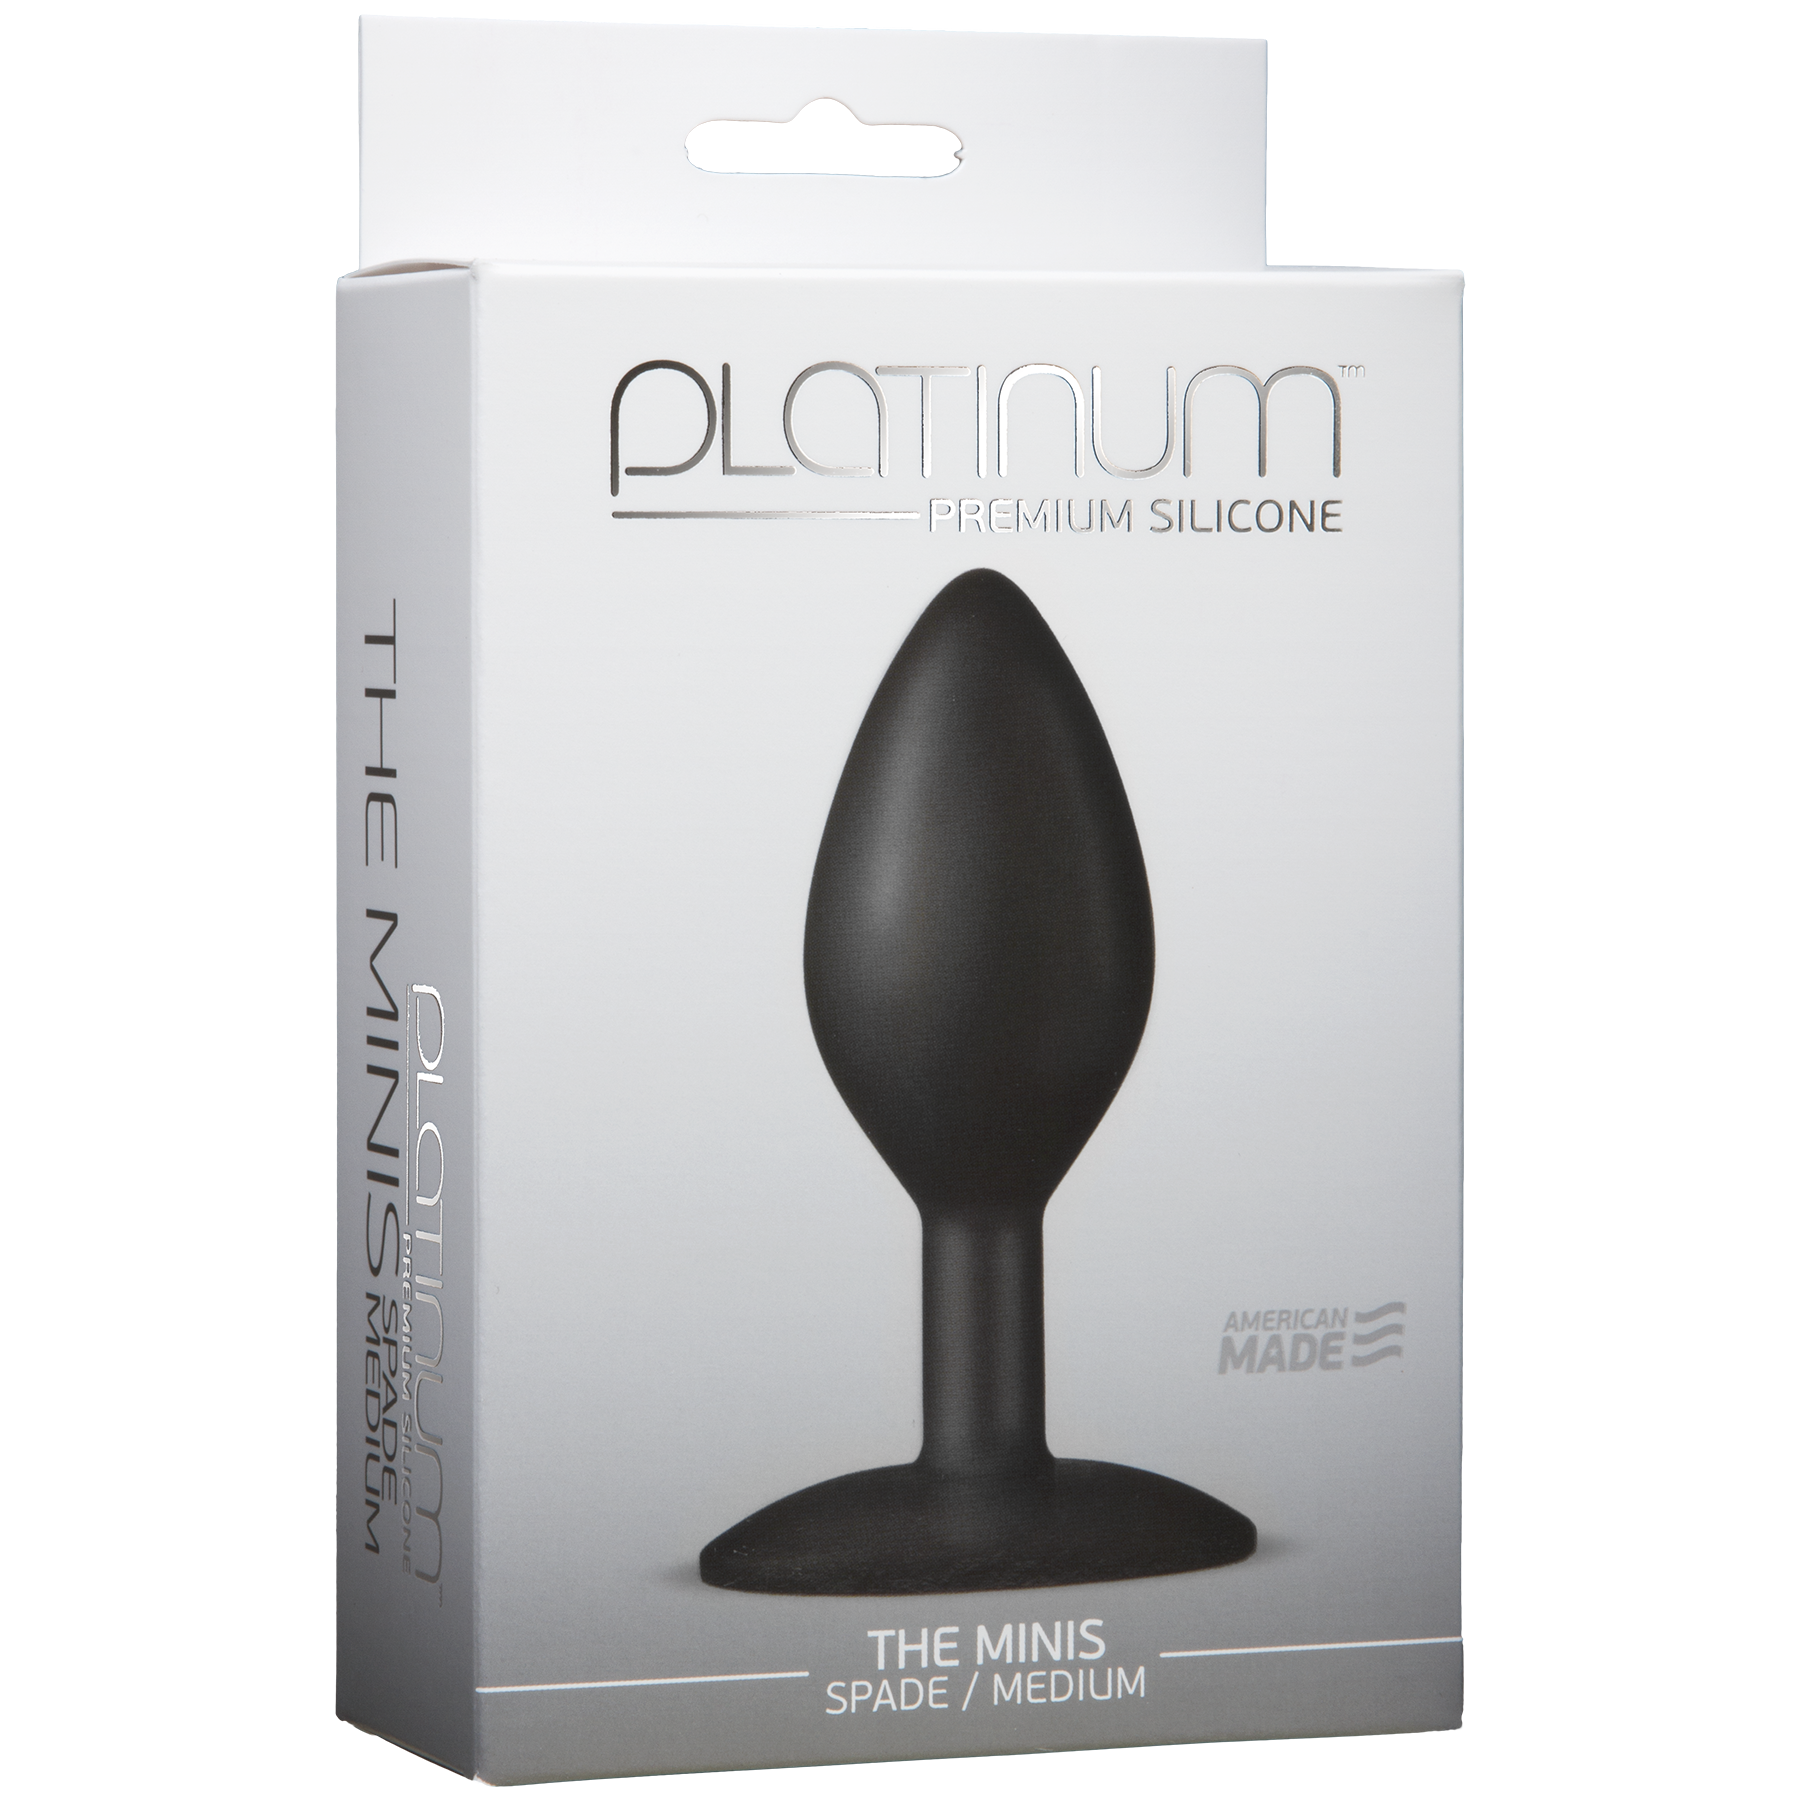 Platinum Premium Silicone The Mini's Spade - Medium, Black - Thorn & Feather Sex Toy Canada